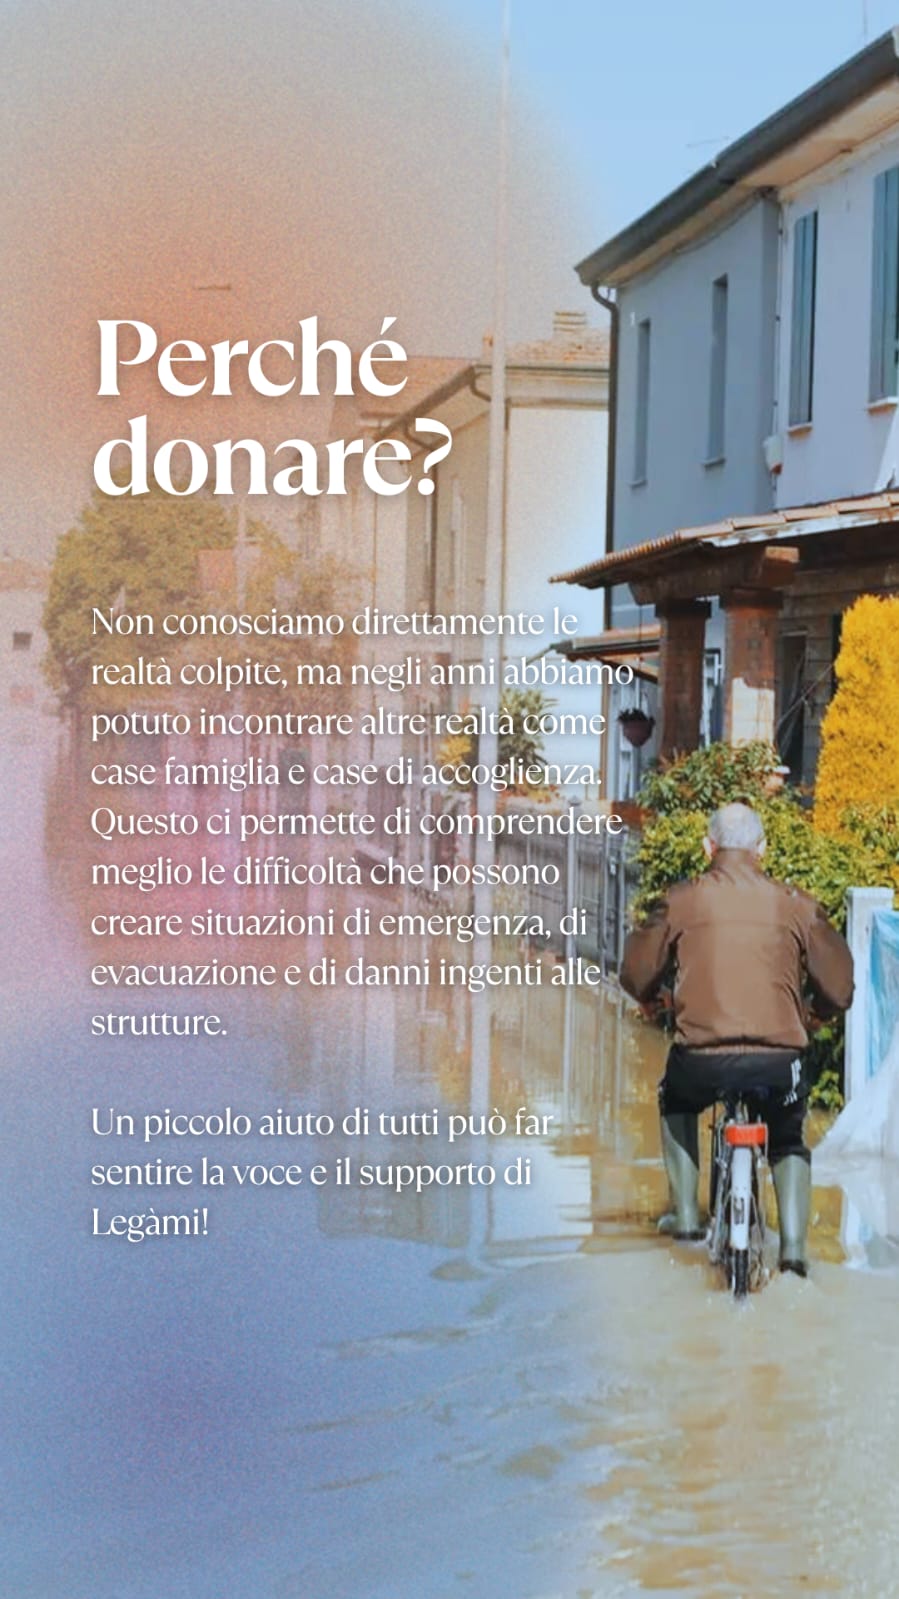 Raccolta fondi per la Romagna